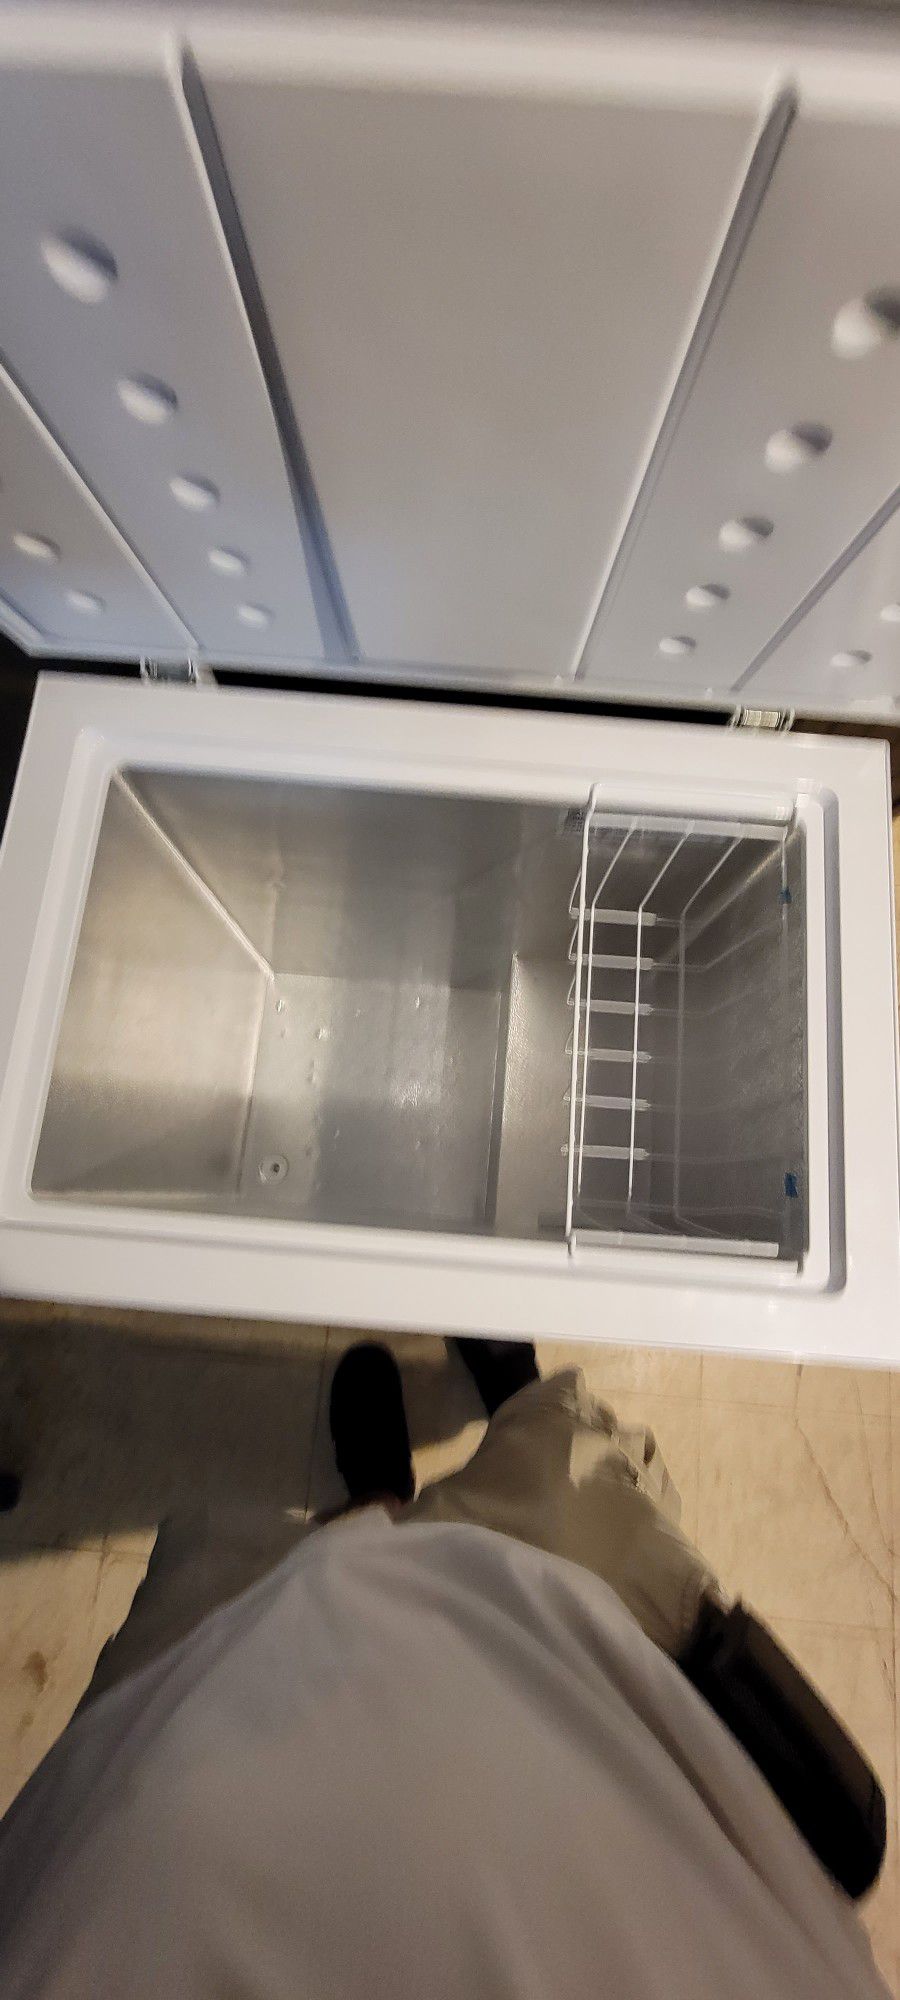 5.0 Deep Freezer Like New Open Box